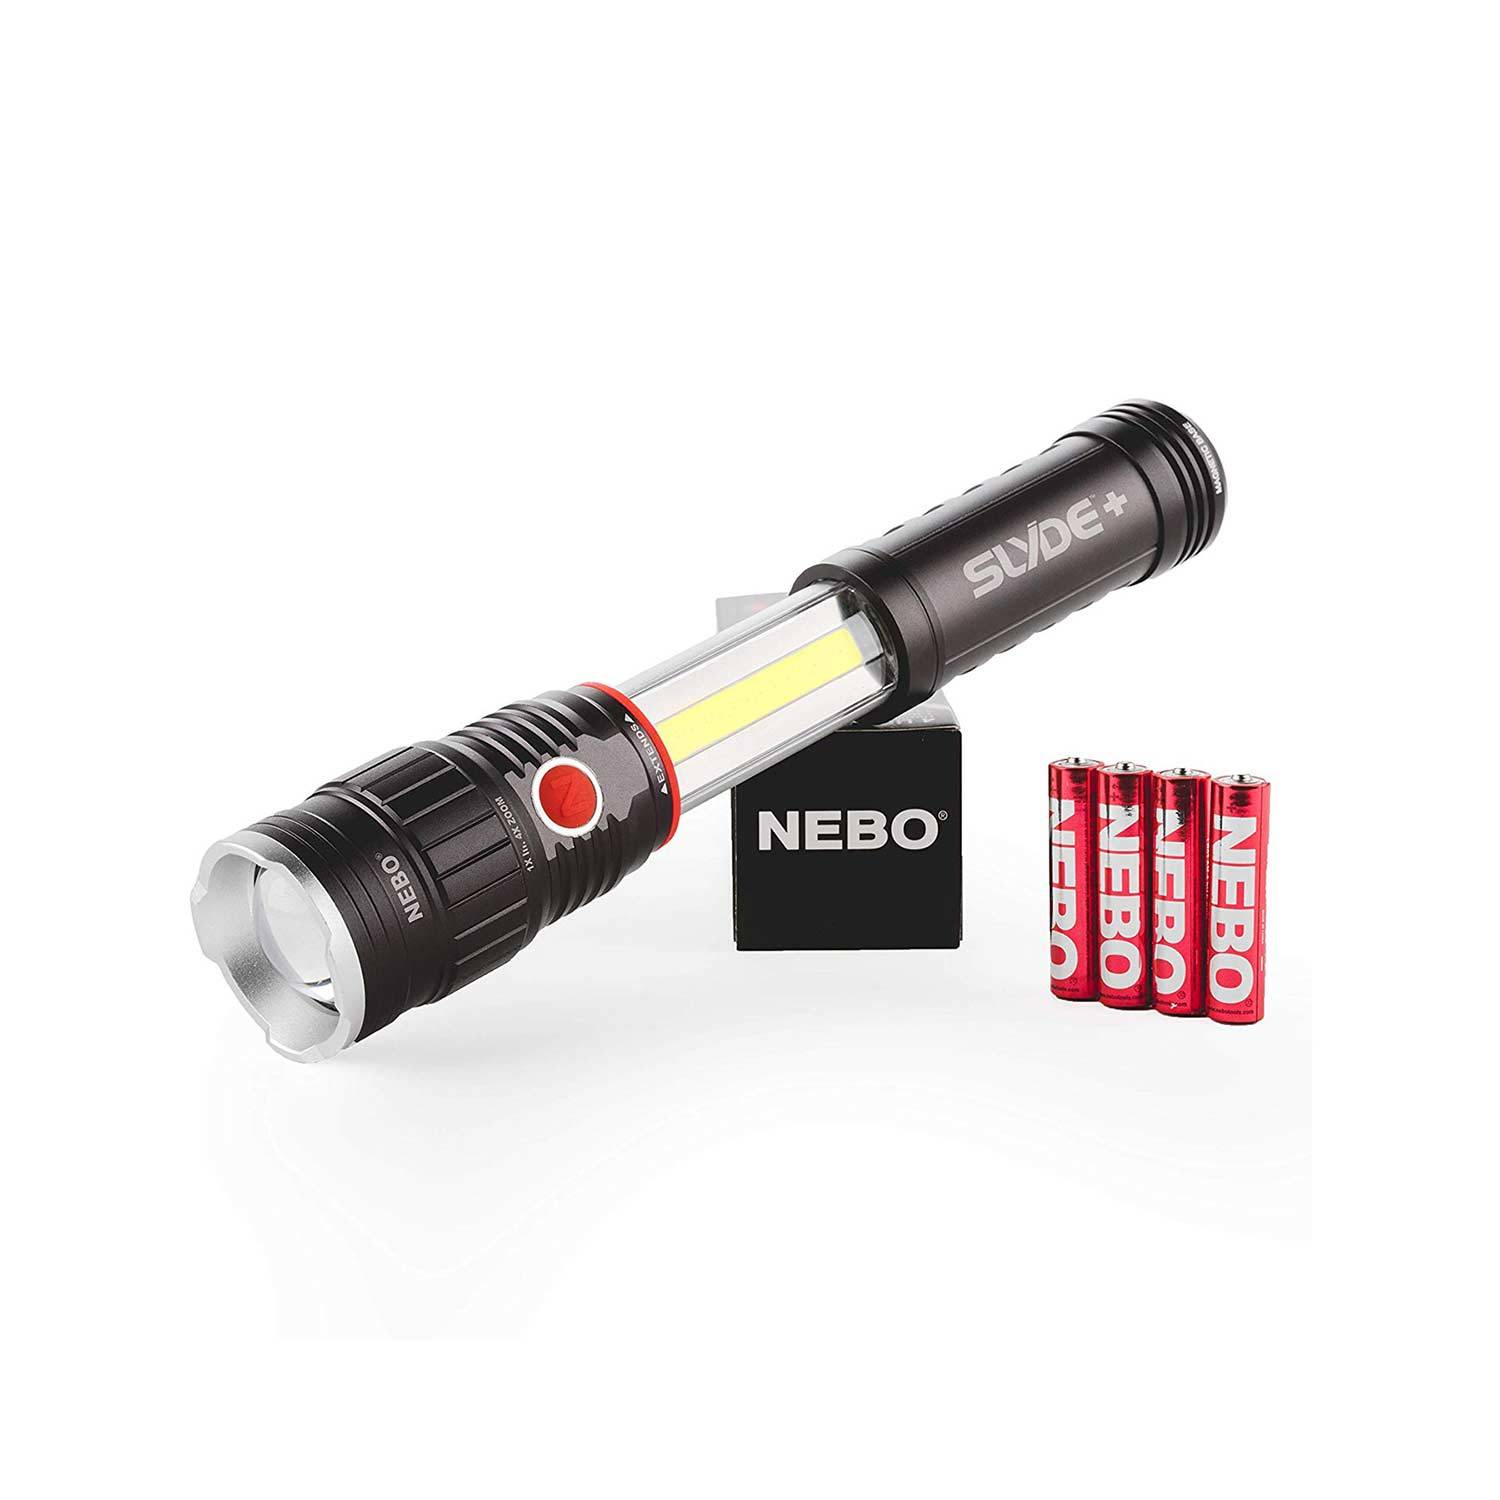 NEBO SLYDE+ Work Light & Flashlight